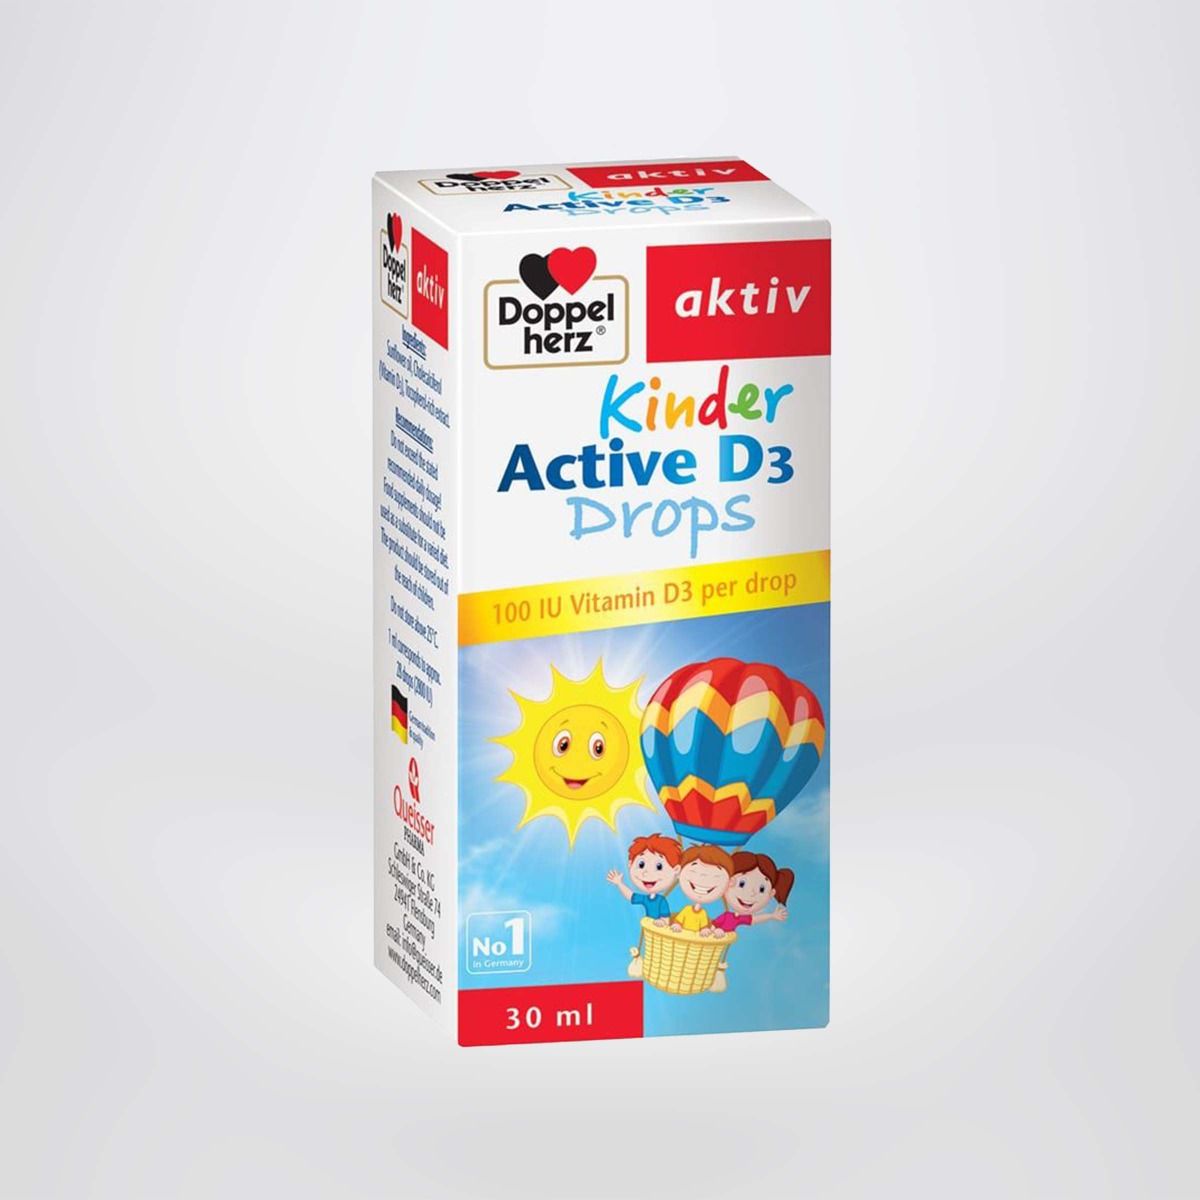 Siro bổ sung Vitamin D3, tăng đề kháng cho trẻ Doppelherz Aktiv Kinder Active D3 Drops 30ml